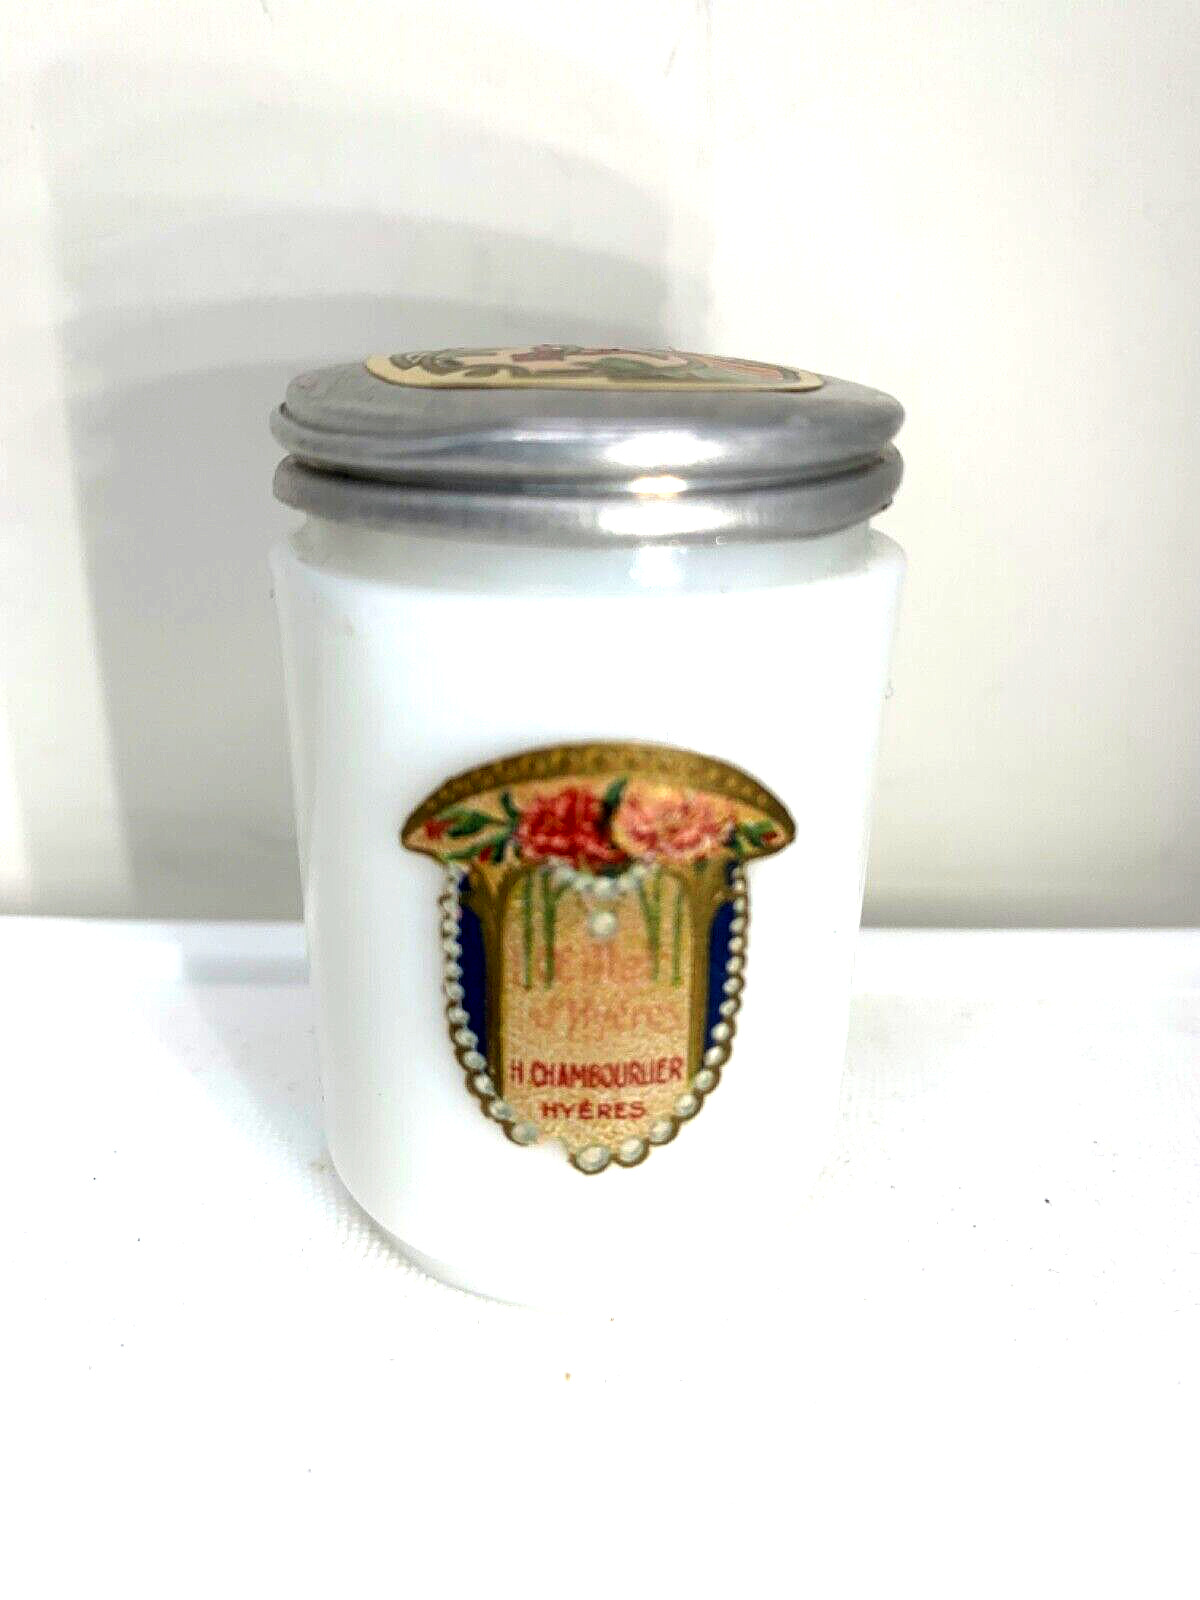 Charming Antique milk glass crème jar.  L’Oeillet of Hyeres by Chambourlier.